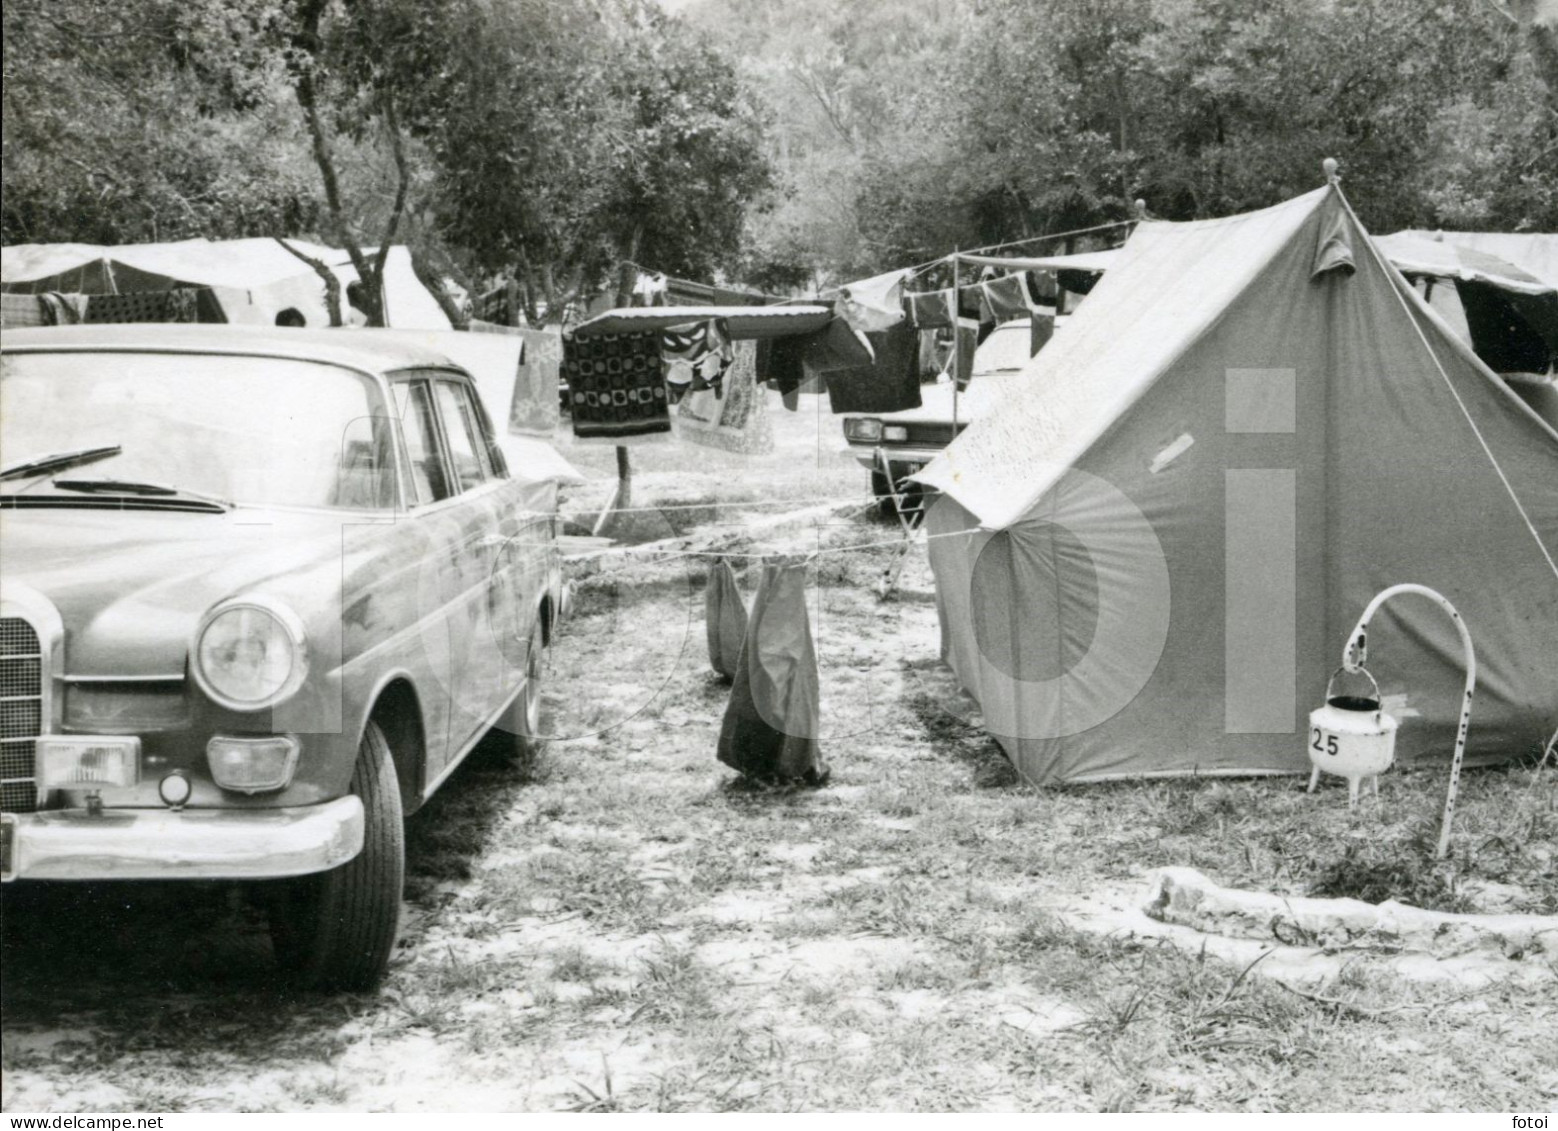 2 PHOTOS SET 1973 ORIGINAL AMATEUR PHOTO FOTO MERCEDES FORD CAPRI CAMPING  MOZAMBIQUE MOÇAMBIQUE AFRICA AFRIQUE AT304 - Automobiles